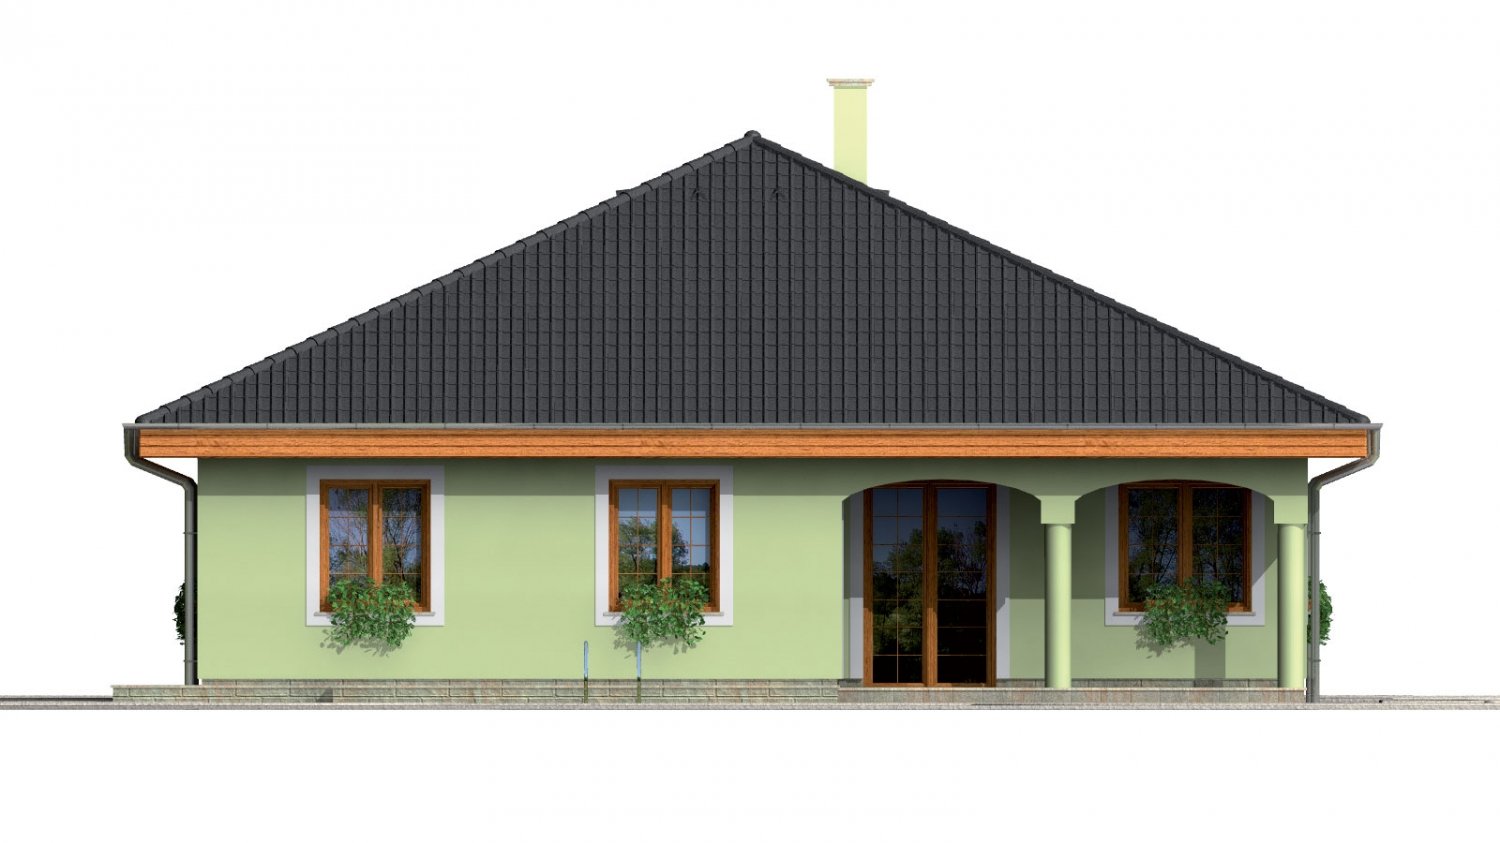 Pohľad 3. - Přízemní projekt domu s krytou terasou a obloukovým jídelním koutem.